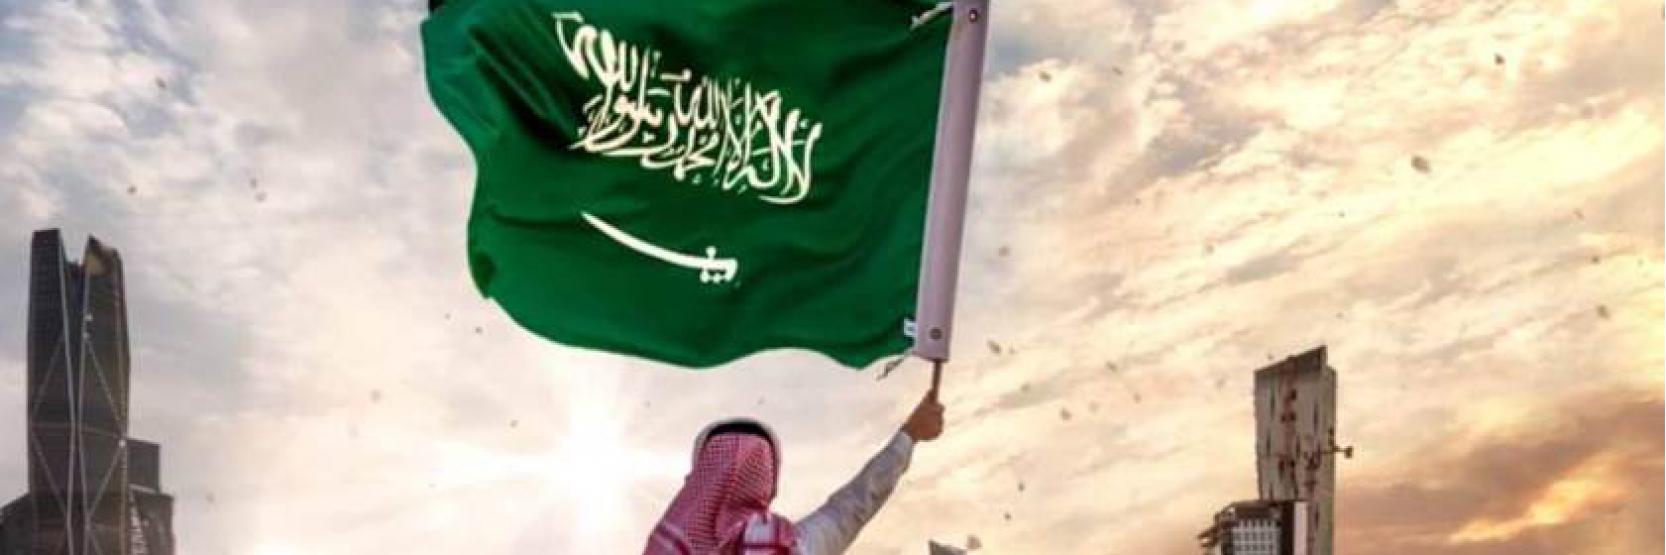 اليوم الوطني السعودي.. روح الشغف والانتماء 